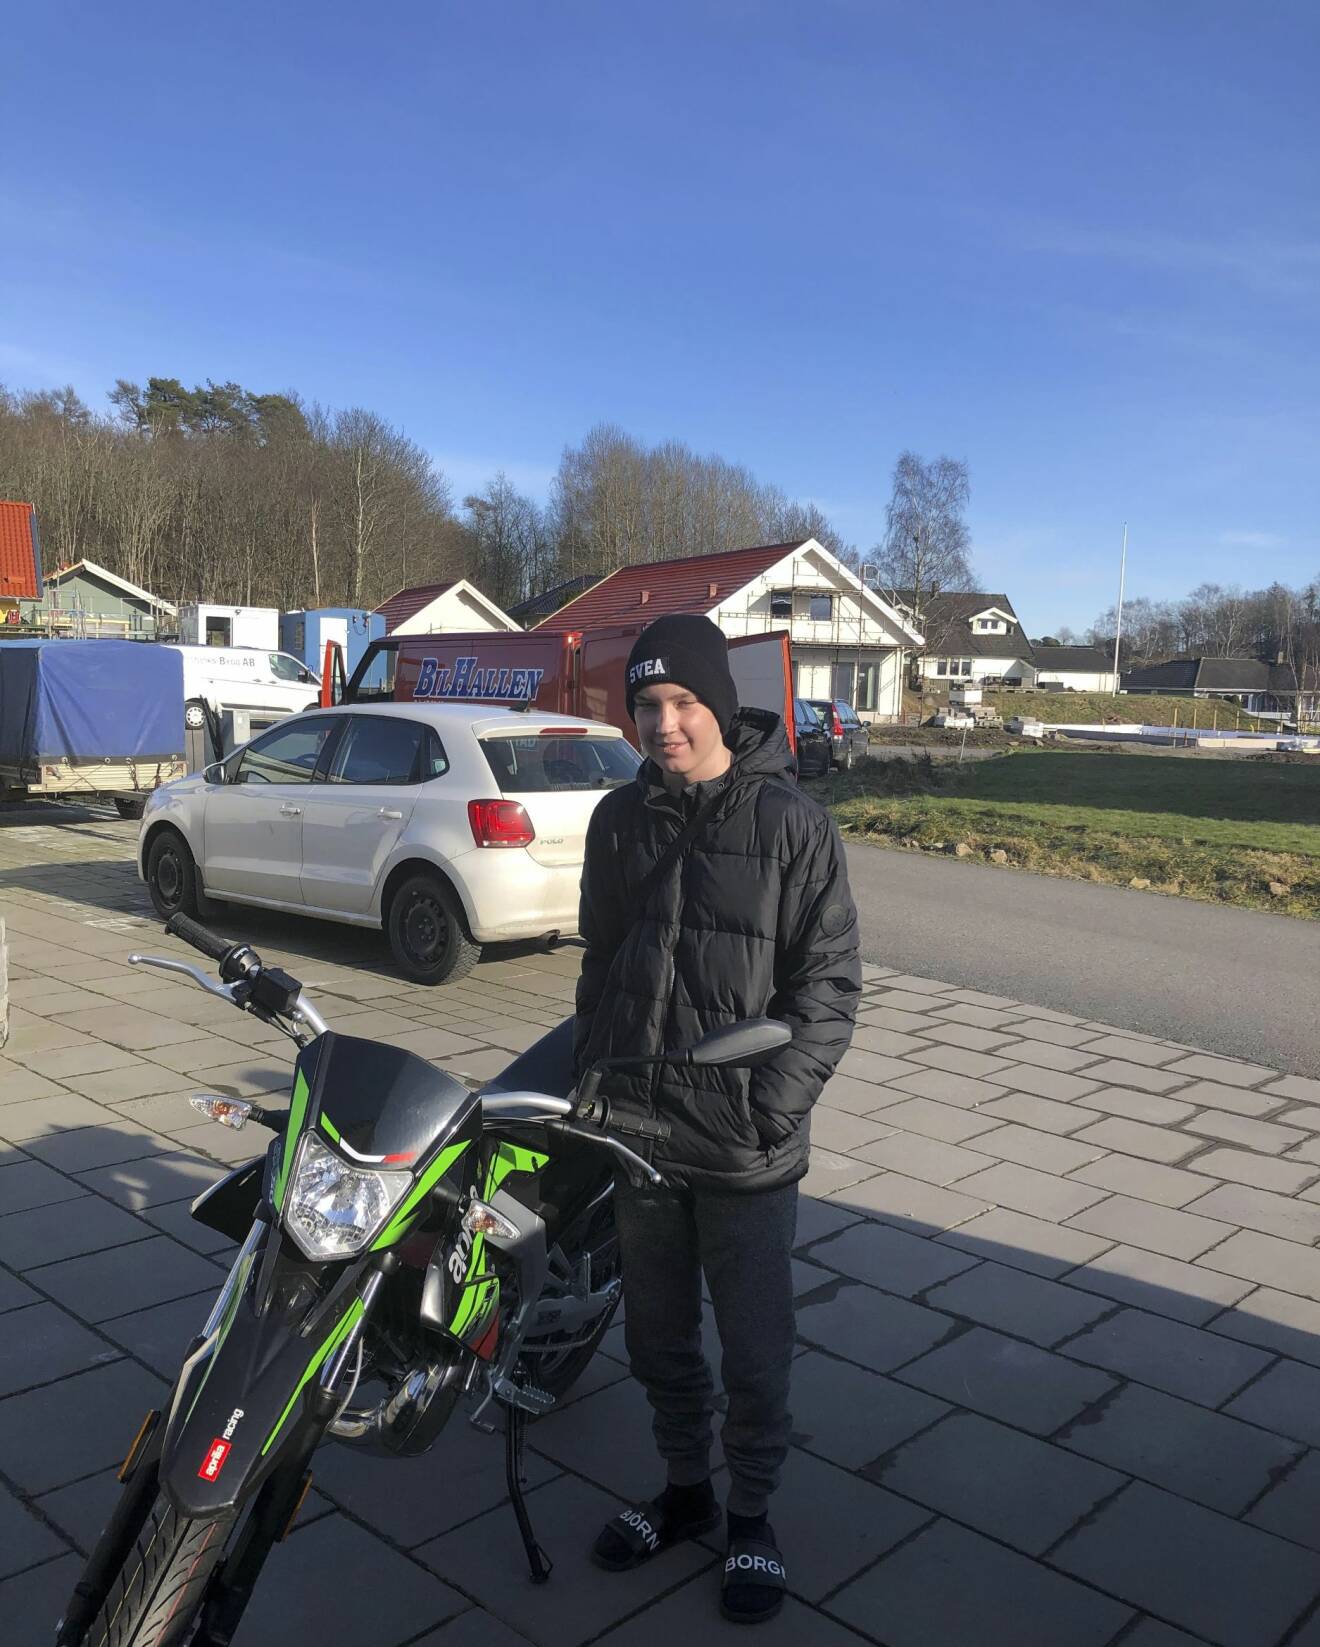 Hampus Nilsson som drabbades av akut lymfatisk leukemi på bild med sin moped.